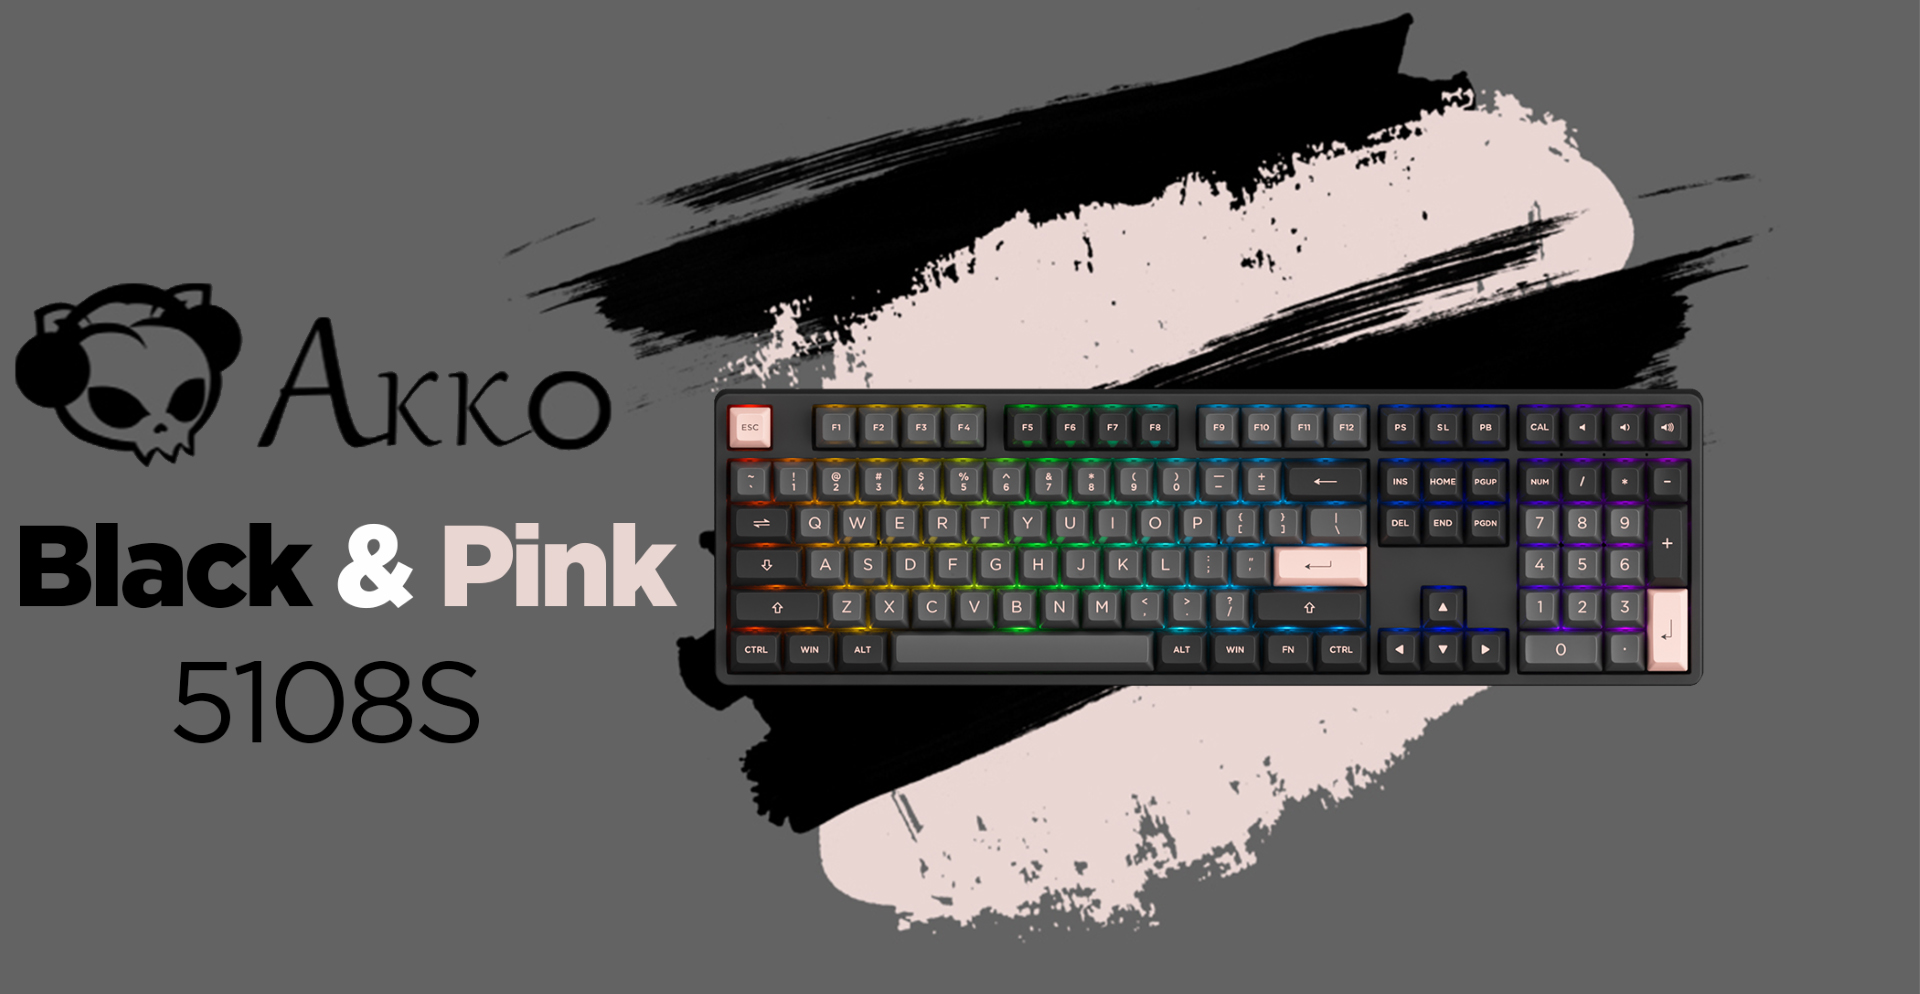 Bàn phím cơ Akko 5108S Black Pink Black sw (Akko CS Jelly/USB/RGB - Bàn phím cơ Akko 5108S Black Pink Black sw là một sản phẩm thú vị và độc đáo nếu bạn đang tìm kiếm bàn phím cơ đáng mua. Với bàn phím này, bạn có thể trải nghiệm hệ thống đèn LED RGB chất lượng cao và phong cách Black Pink Black độc đáo, đẳng cấp. Hãy tận hưởng trải nghiệm tuyệt vời mà bàn phím cơ Akko 5108S Black Pink Black sw mang lại!